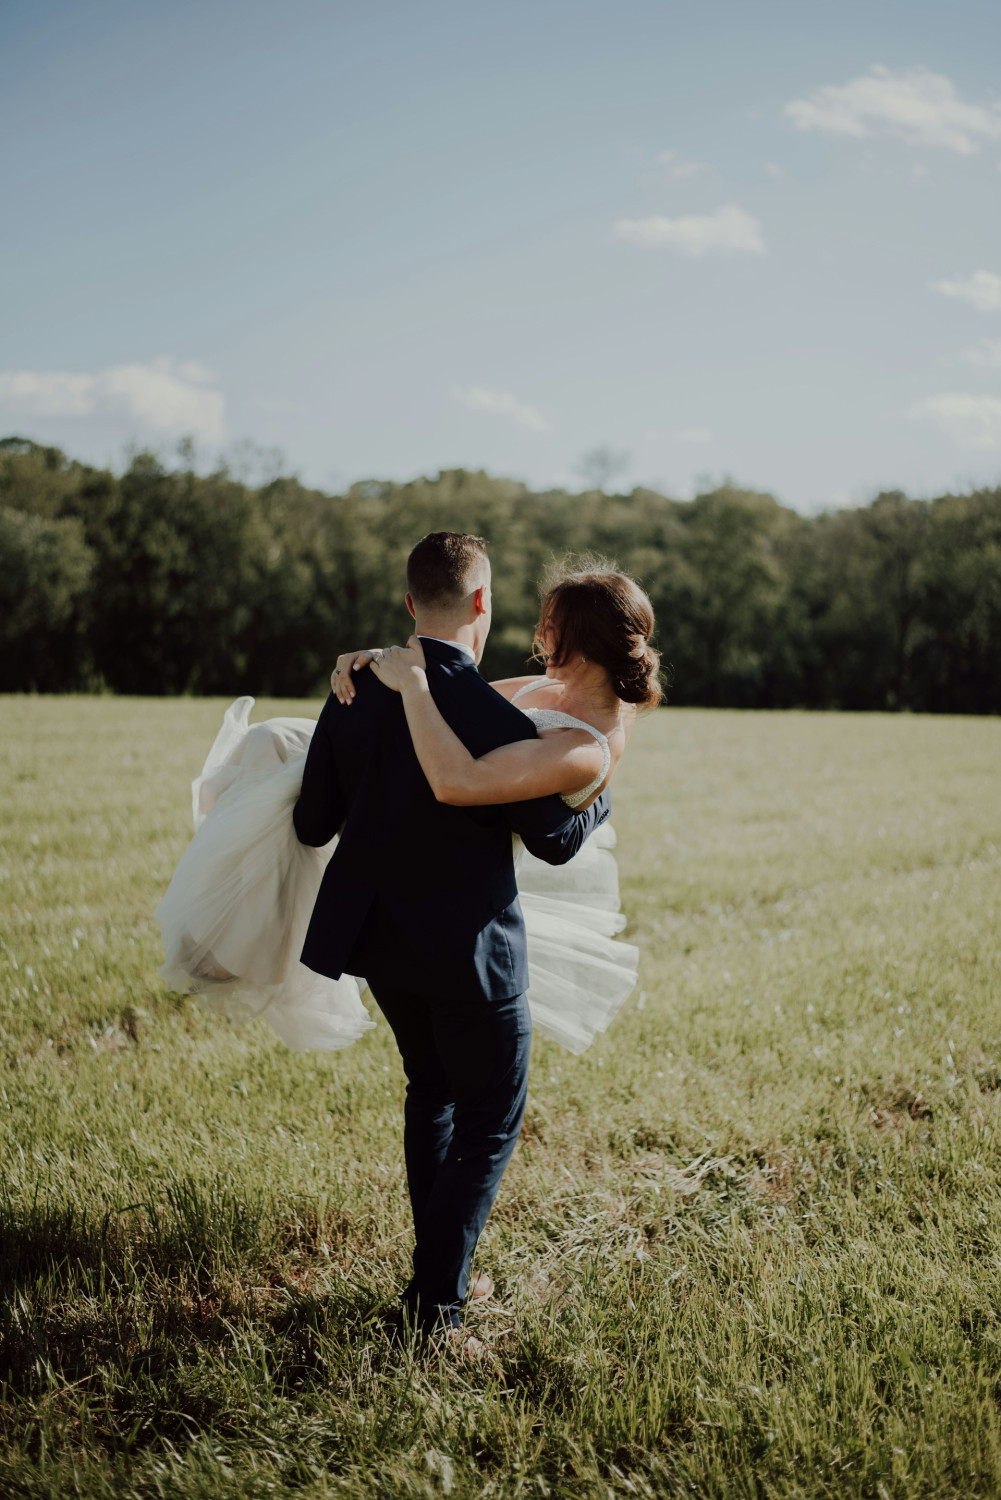 Свадьба, парень и девушка, стоимость свадьбы влияет на продолжительность брака